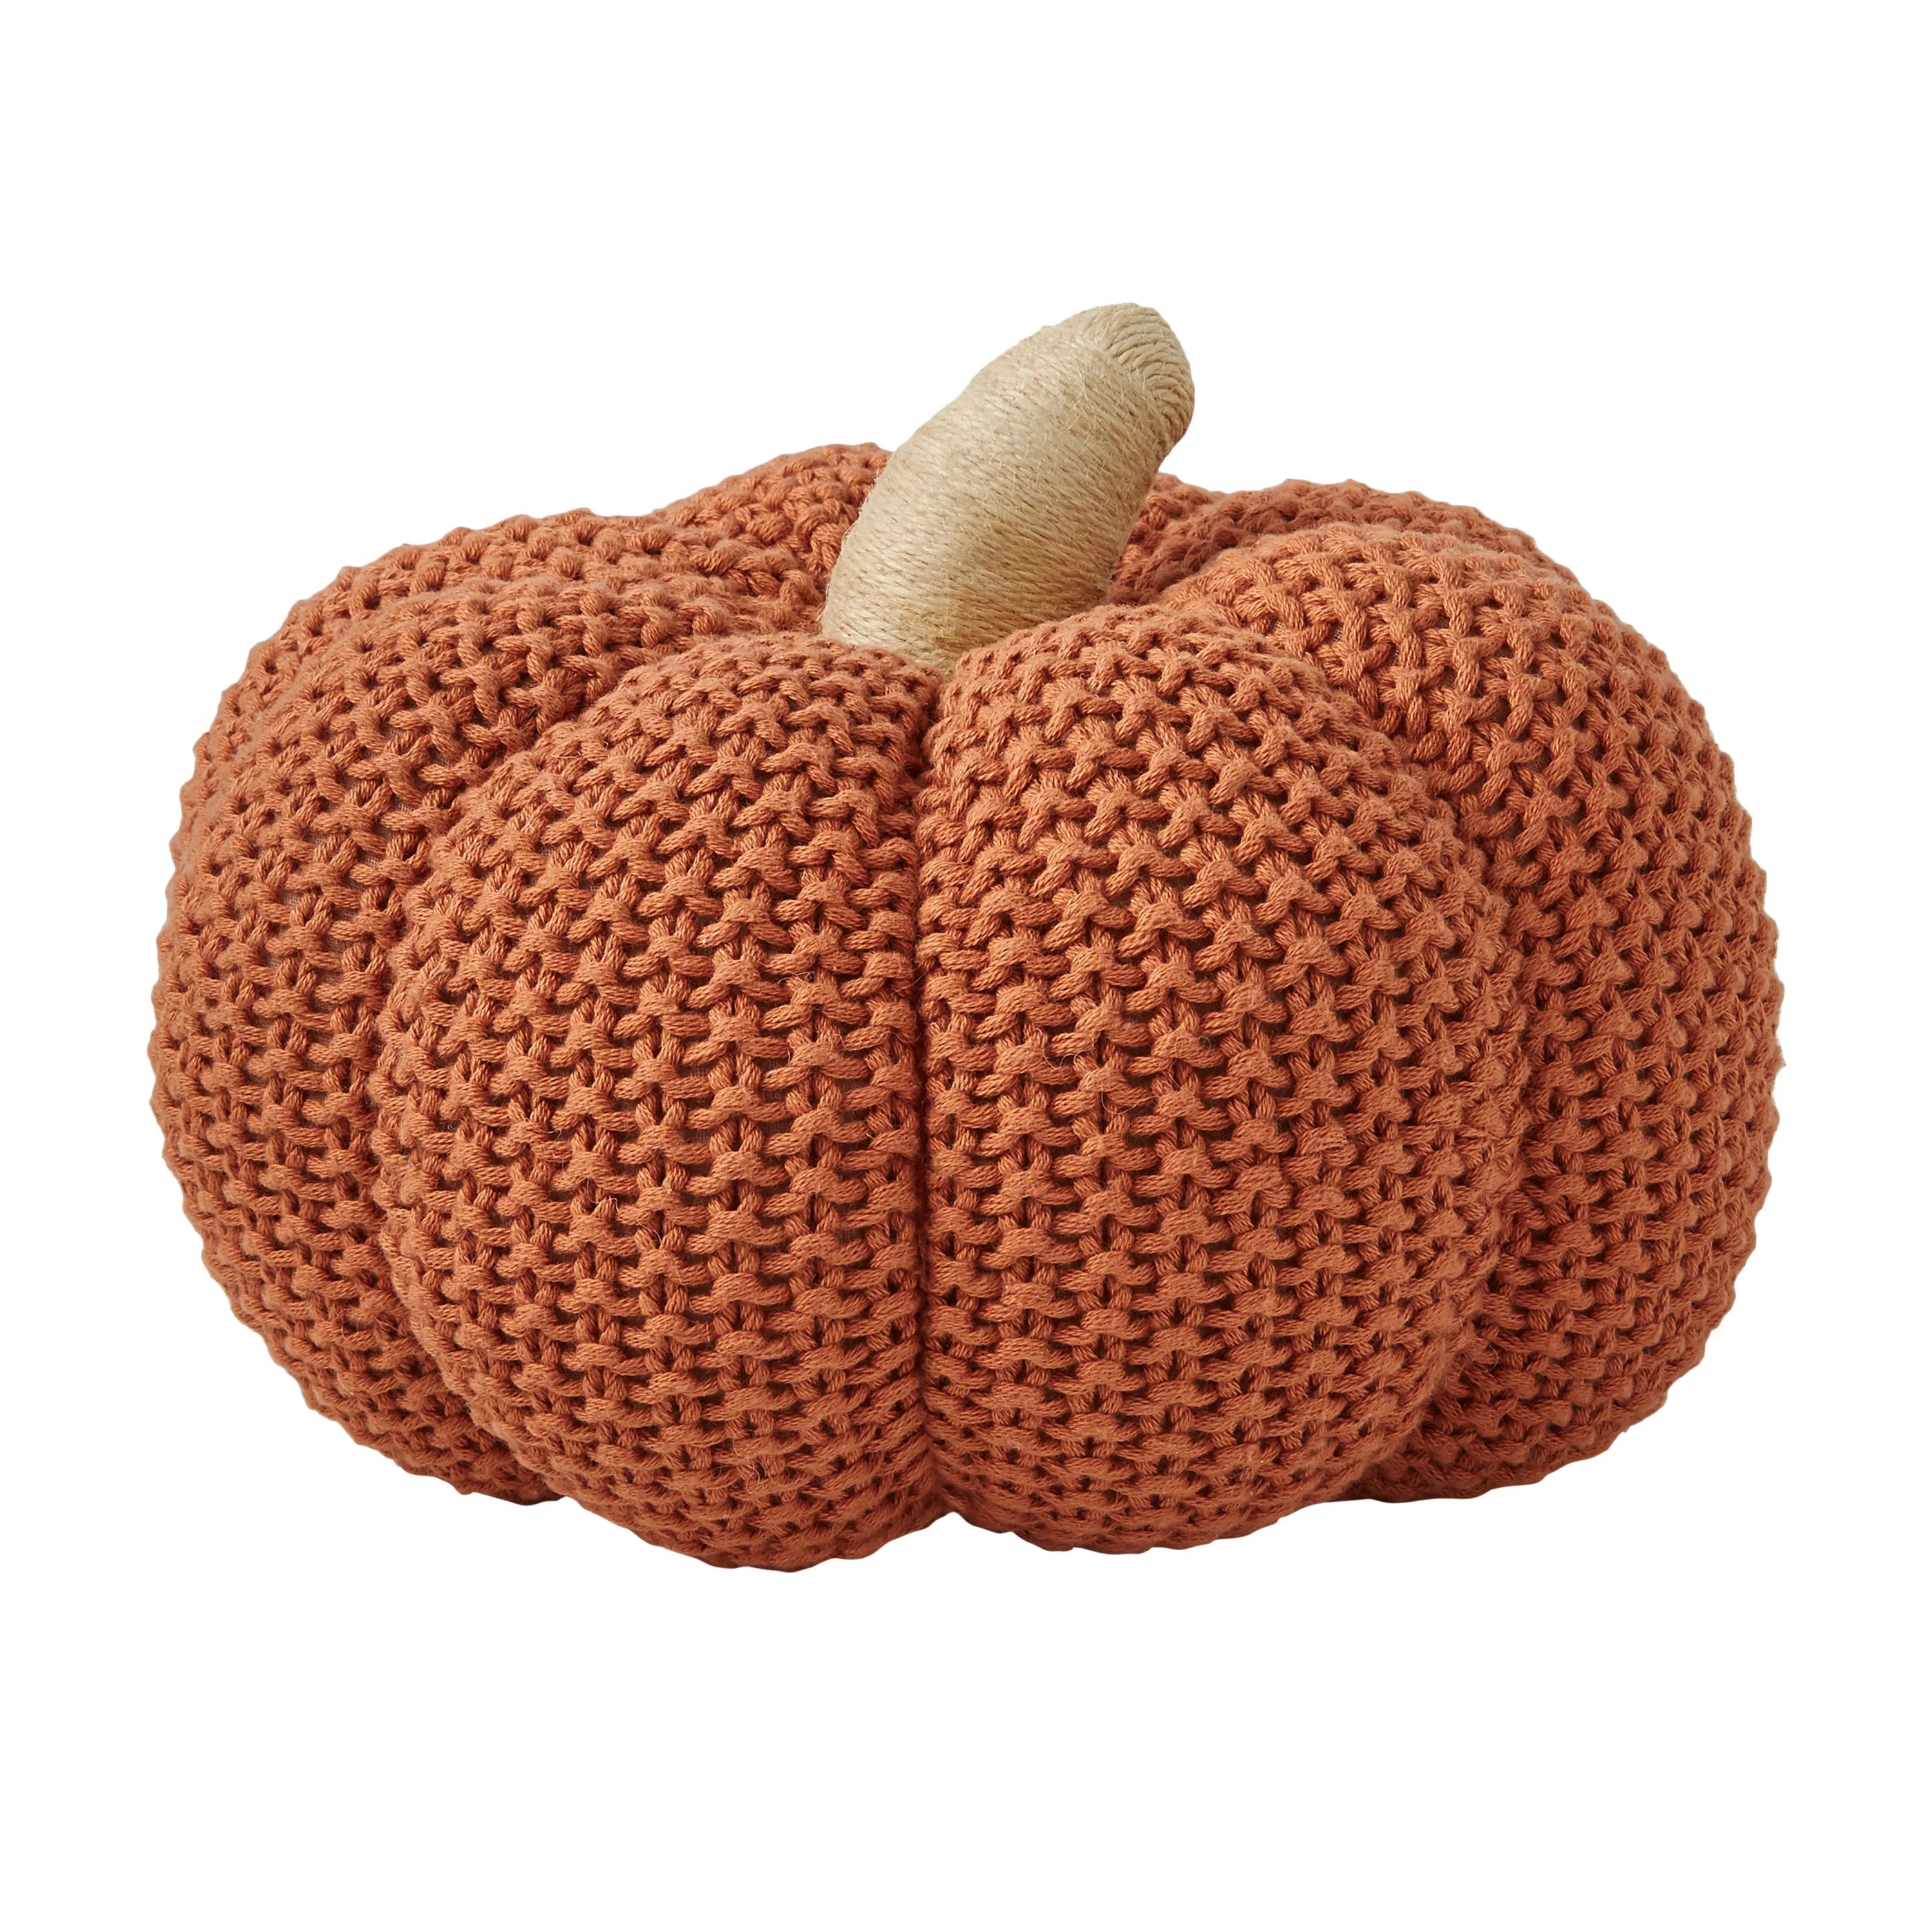 Better Homes & Gardens Rust 3D Knit Pumpkin by Dave & Jenny Marrs | Walmart (US)